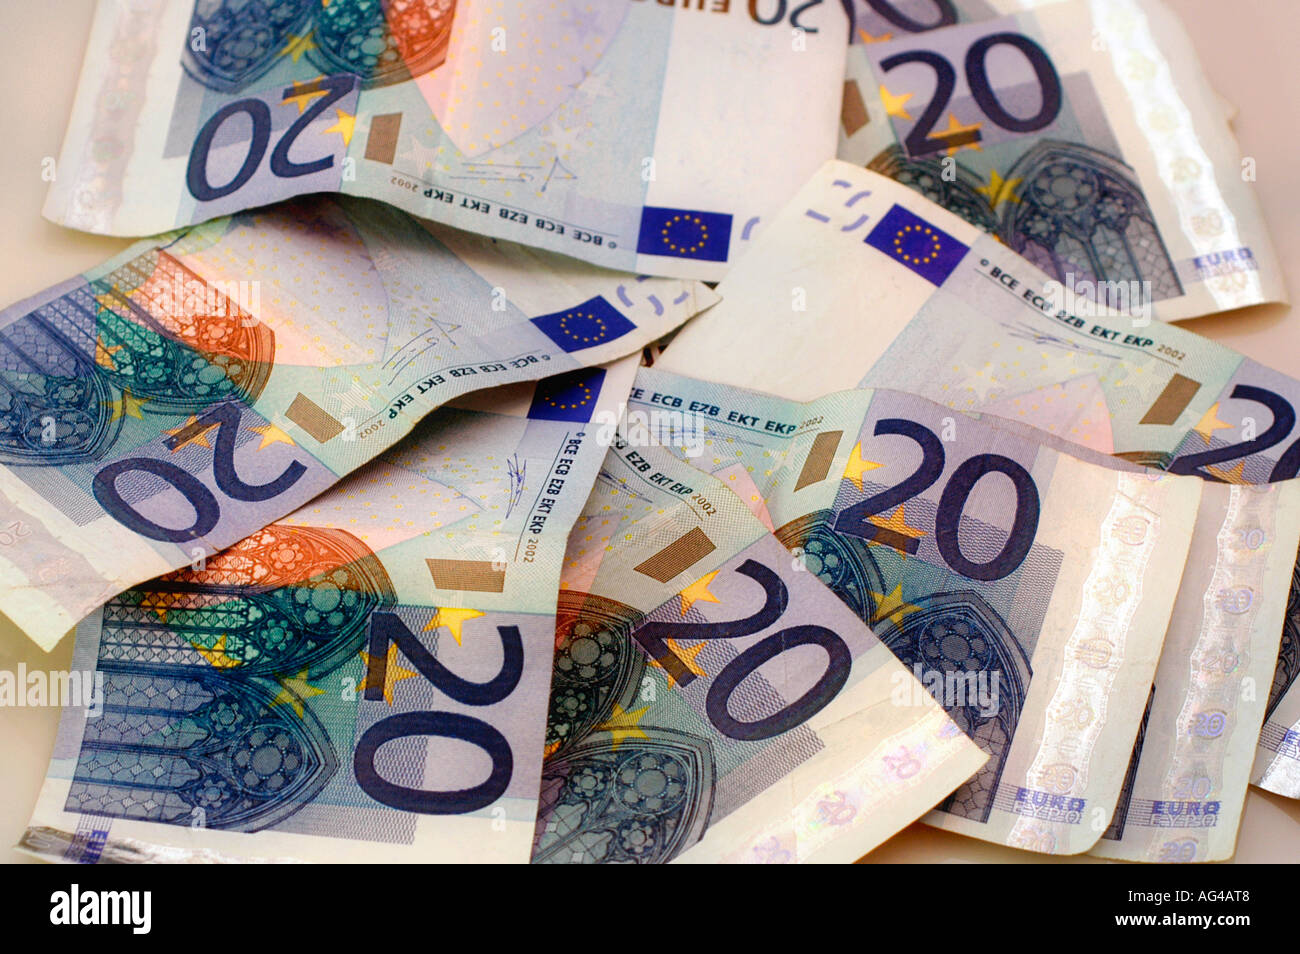 Twenty Euro bills Stock Photo - Alamy